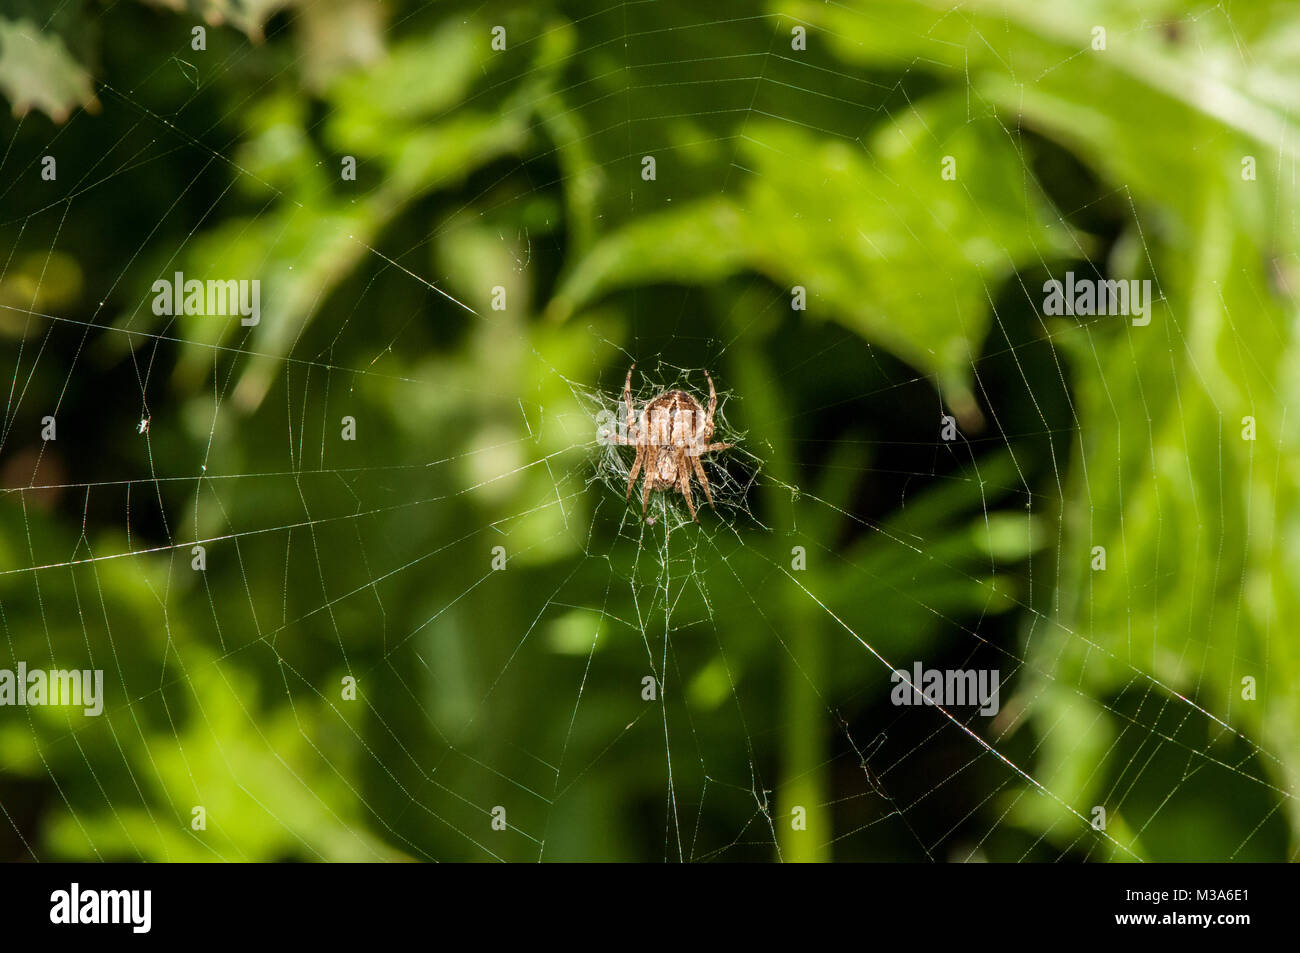 Spider, Agalenatea redii, web Foto Stock